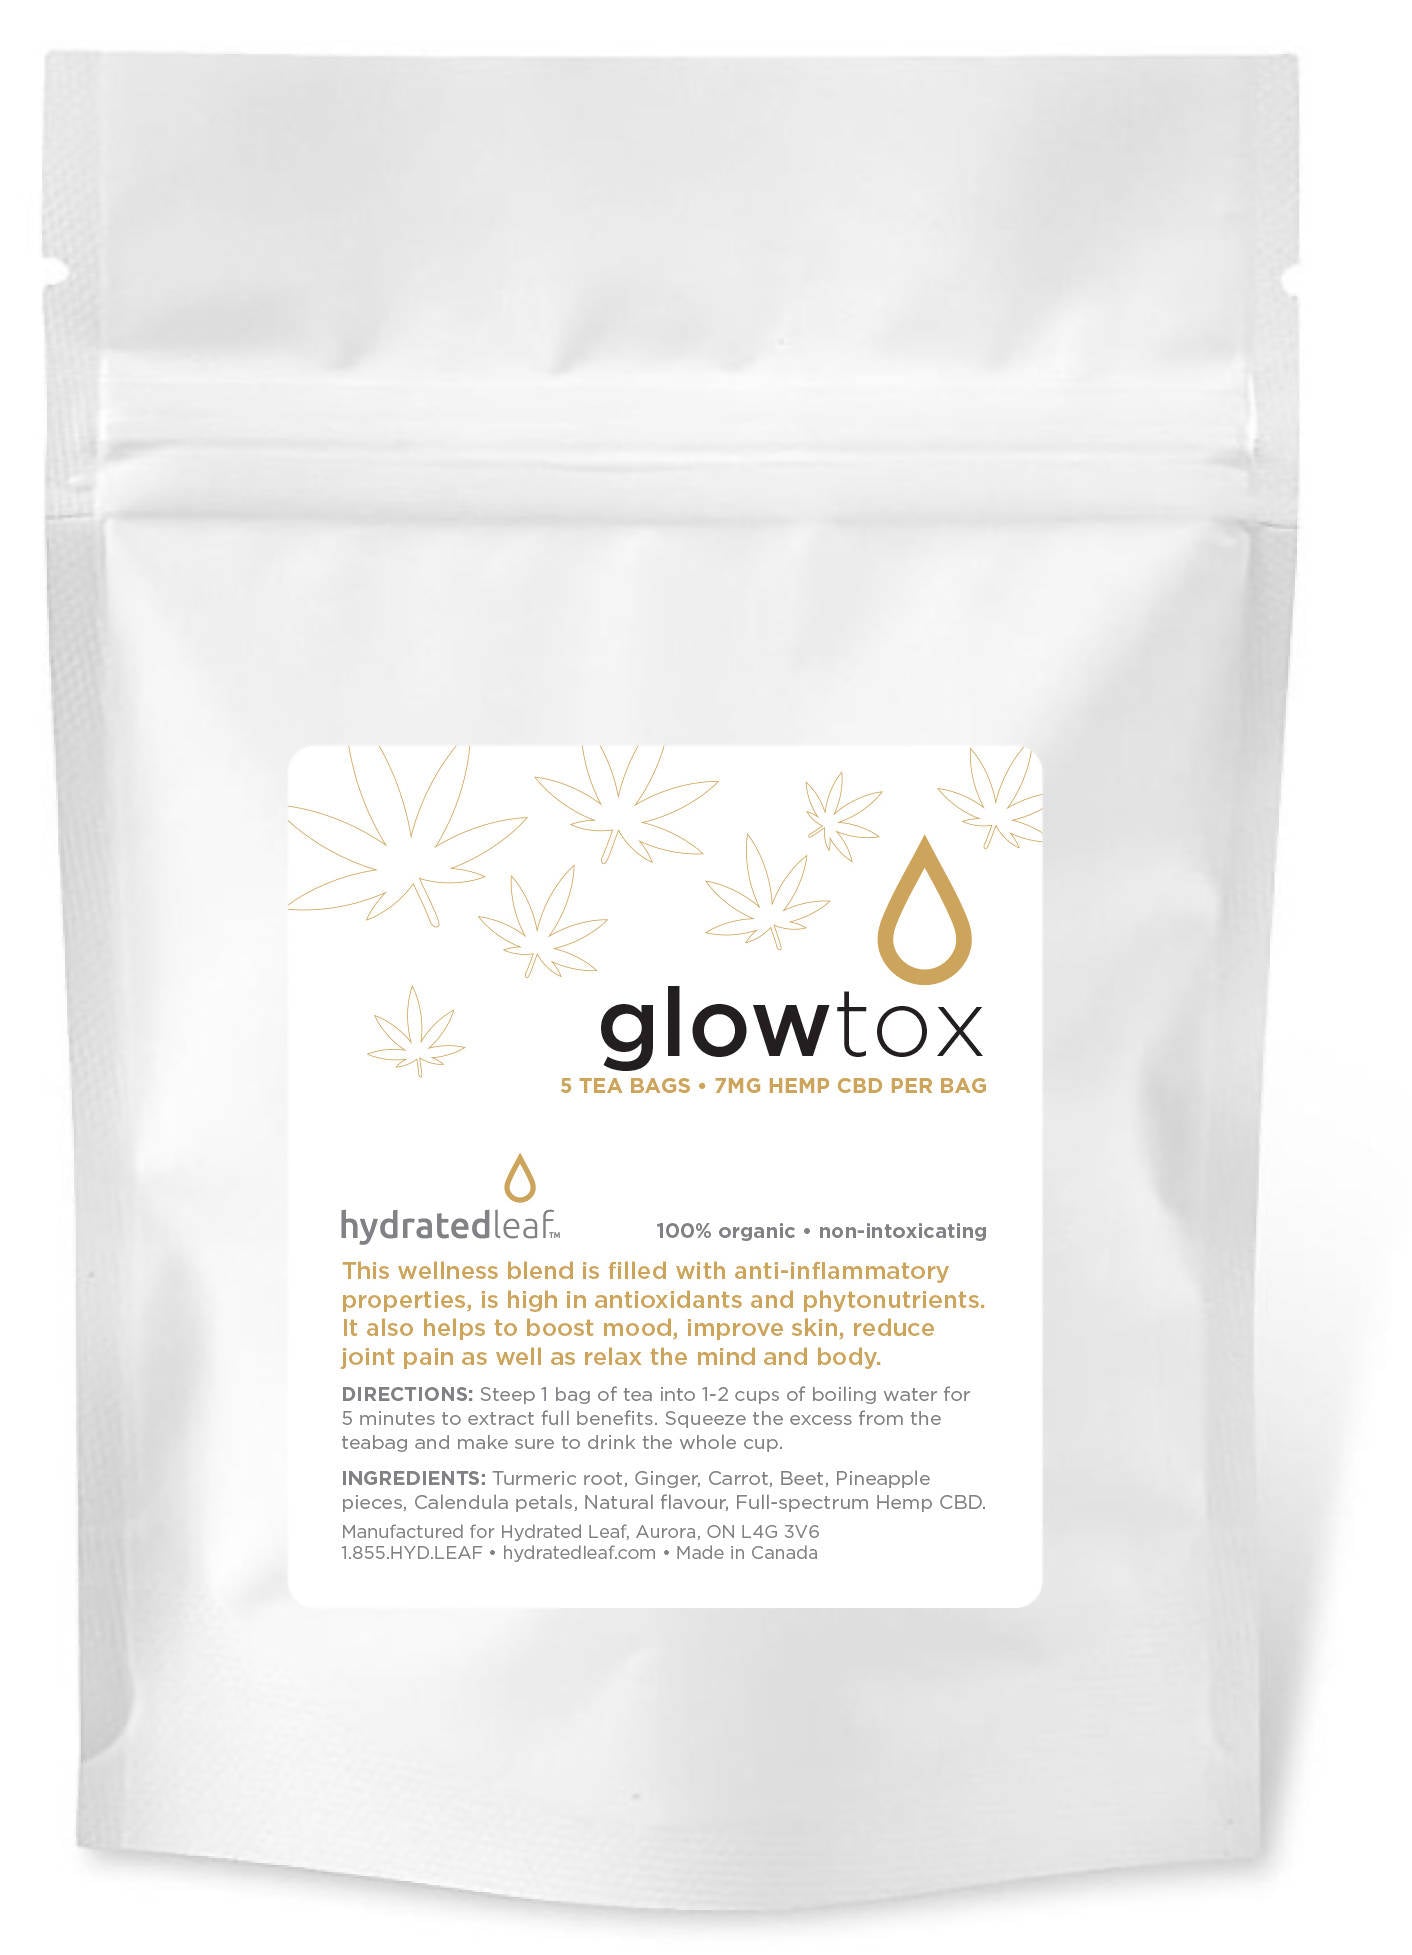 Glowtox Tea